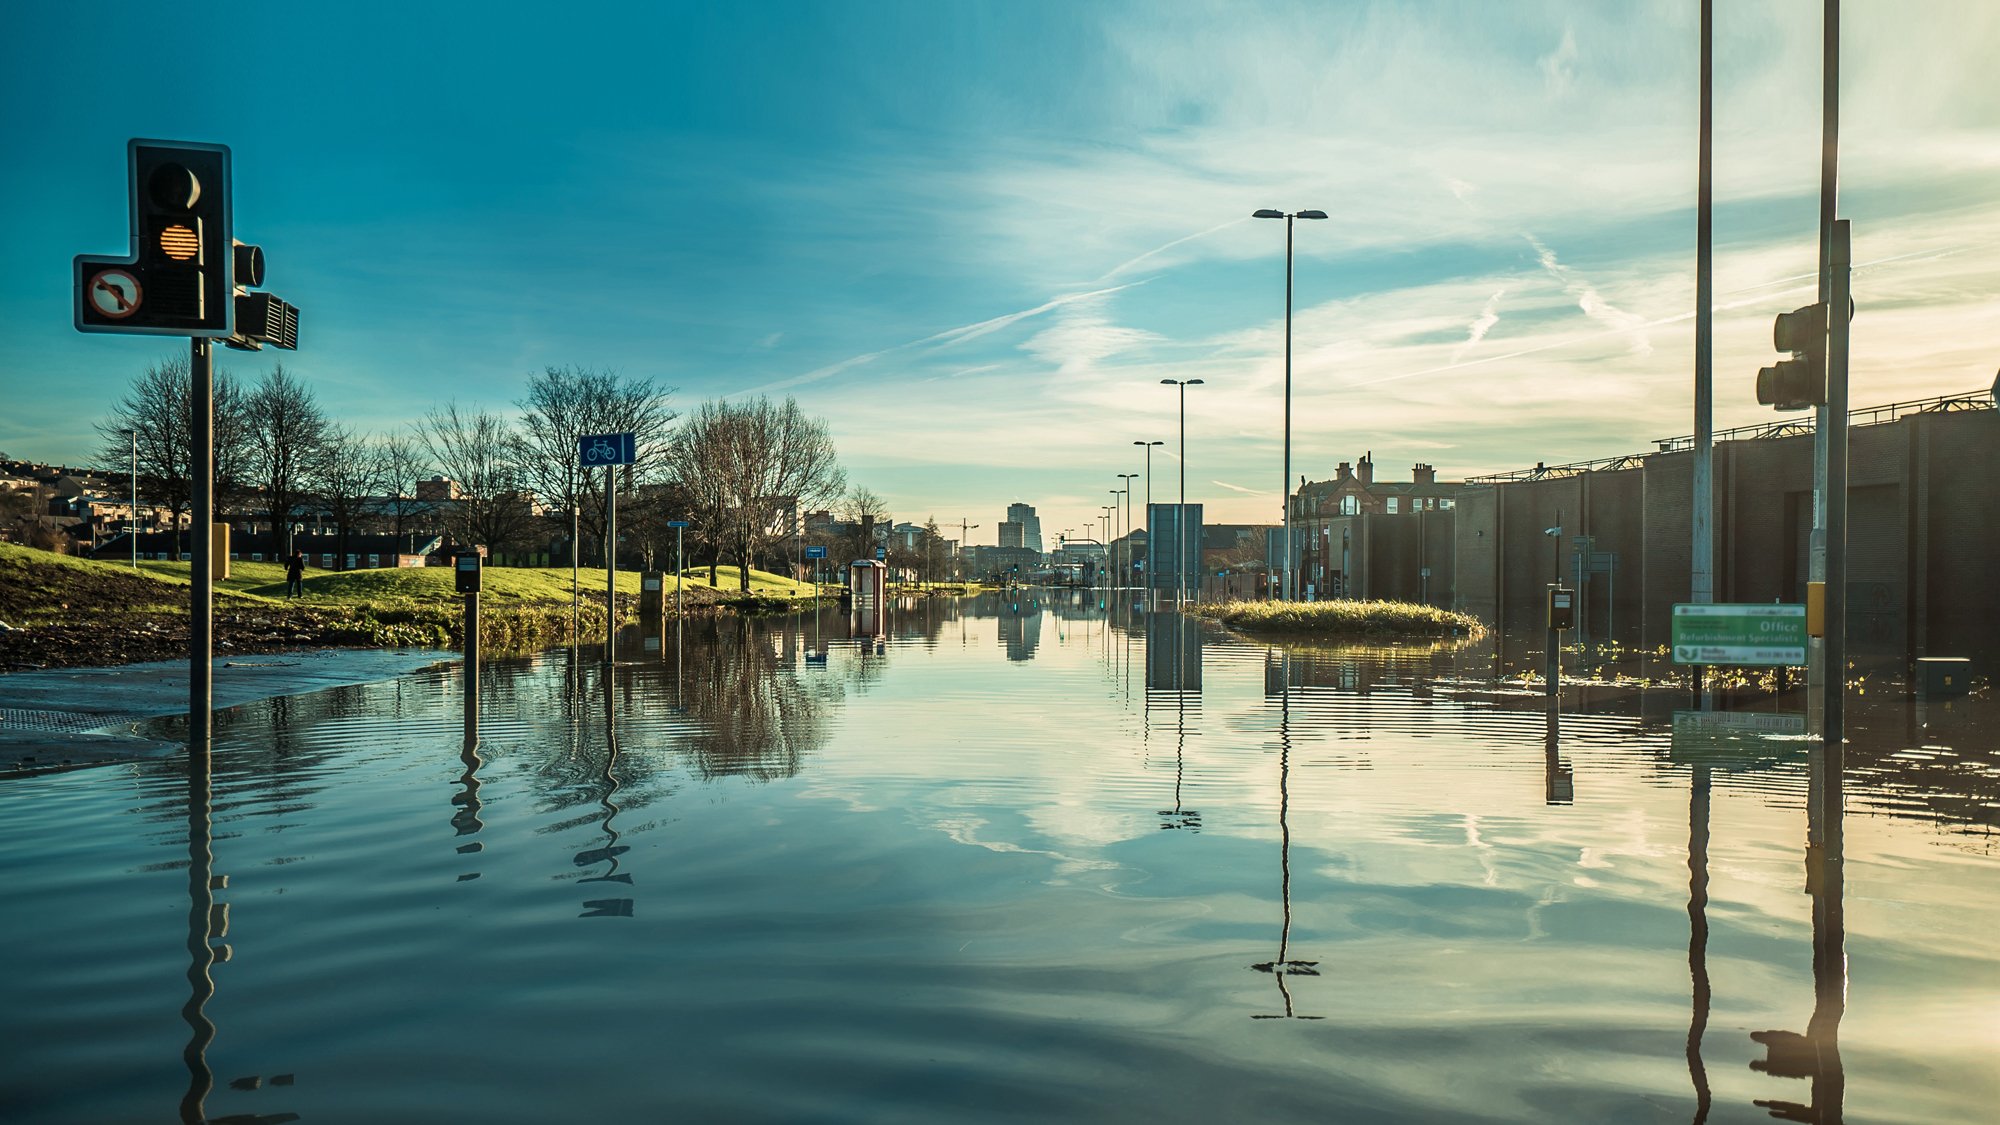 Flood in Leeds